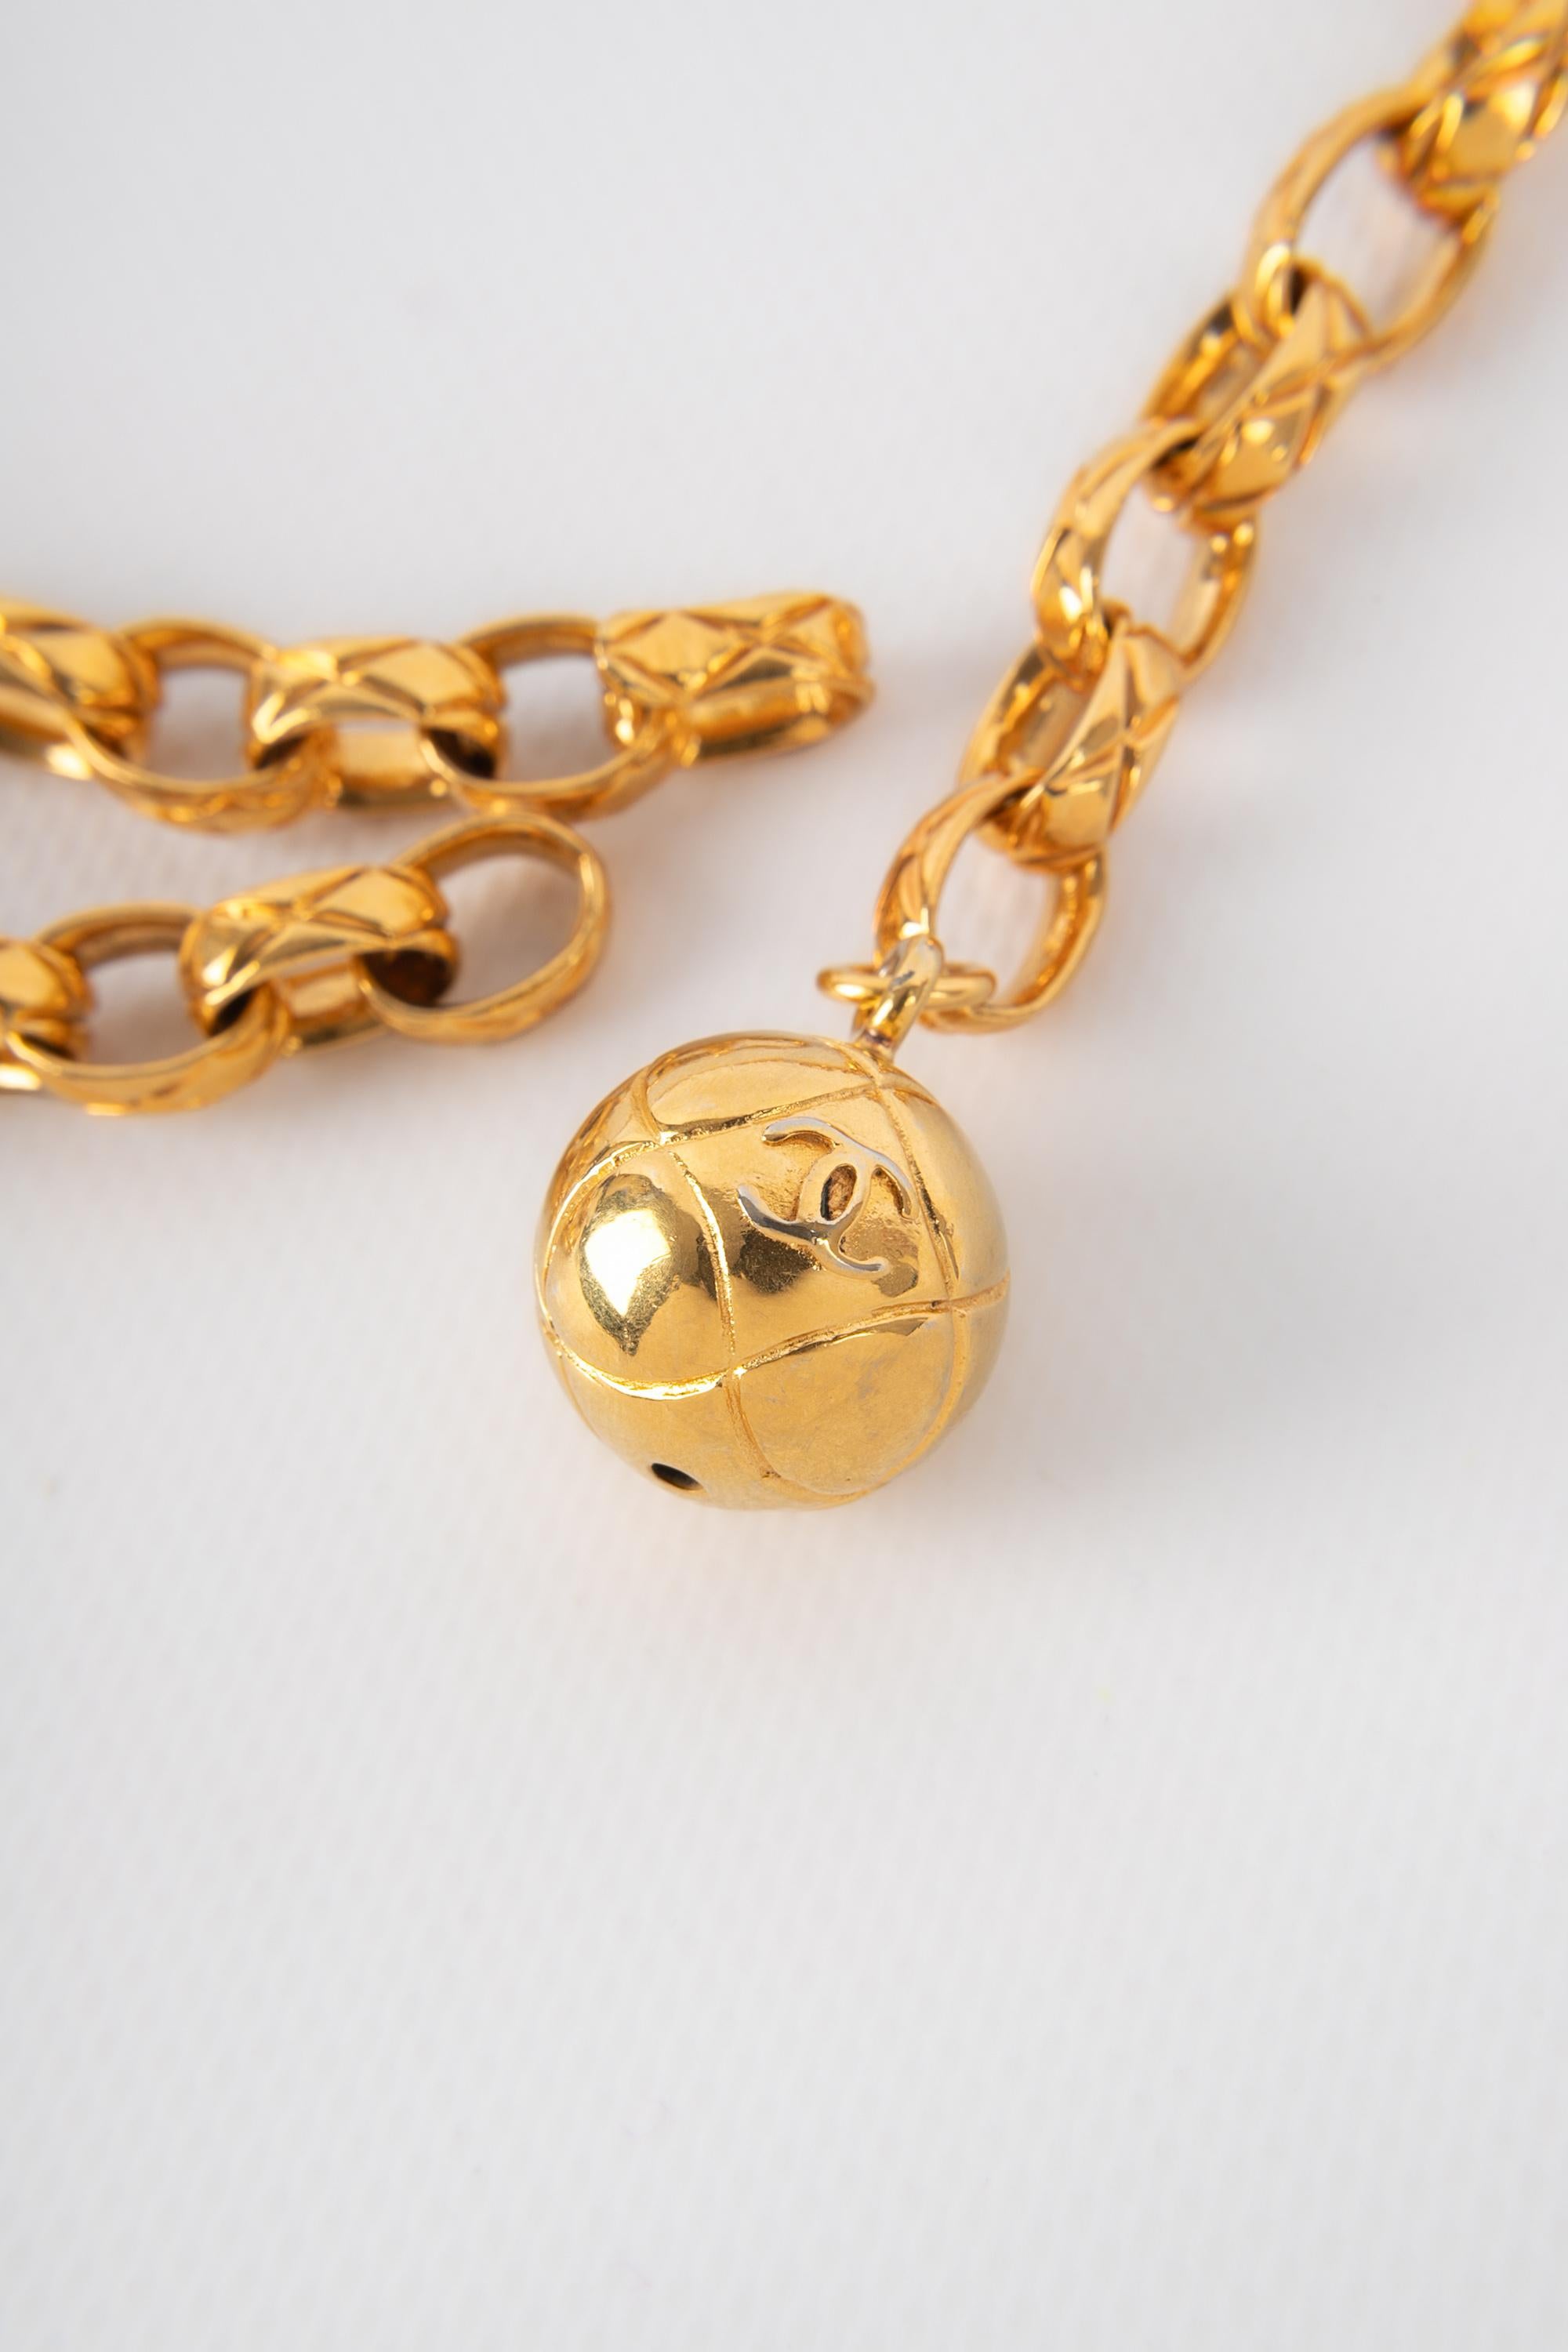 CHANEL - (Made in France) Goldener, gesteppter Metallgürtel mit einem kugelförmigen Charme.

Bedingung:
Sehr guter Zustand

Abmessungen:
Länge: 80 cm

CCB26